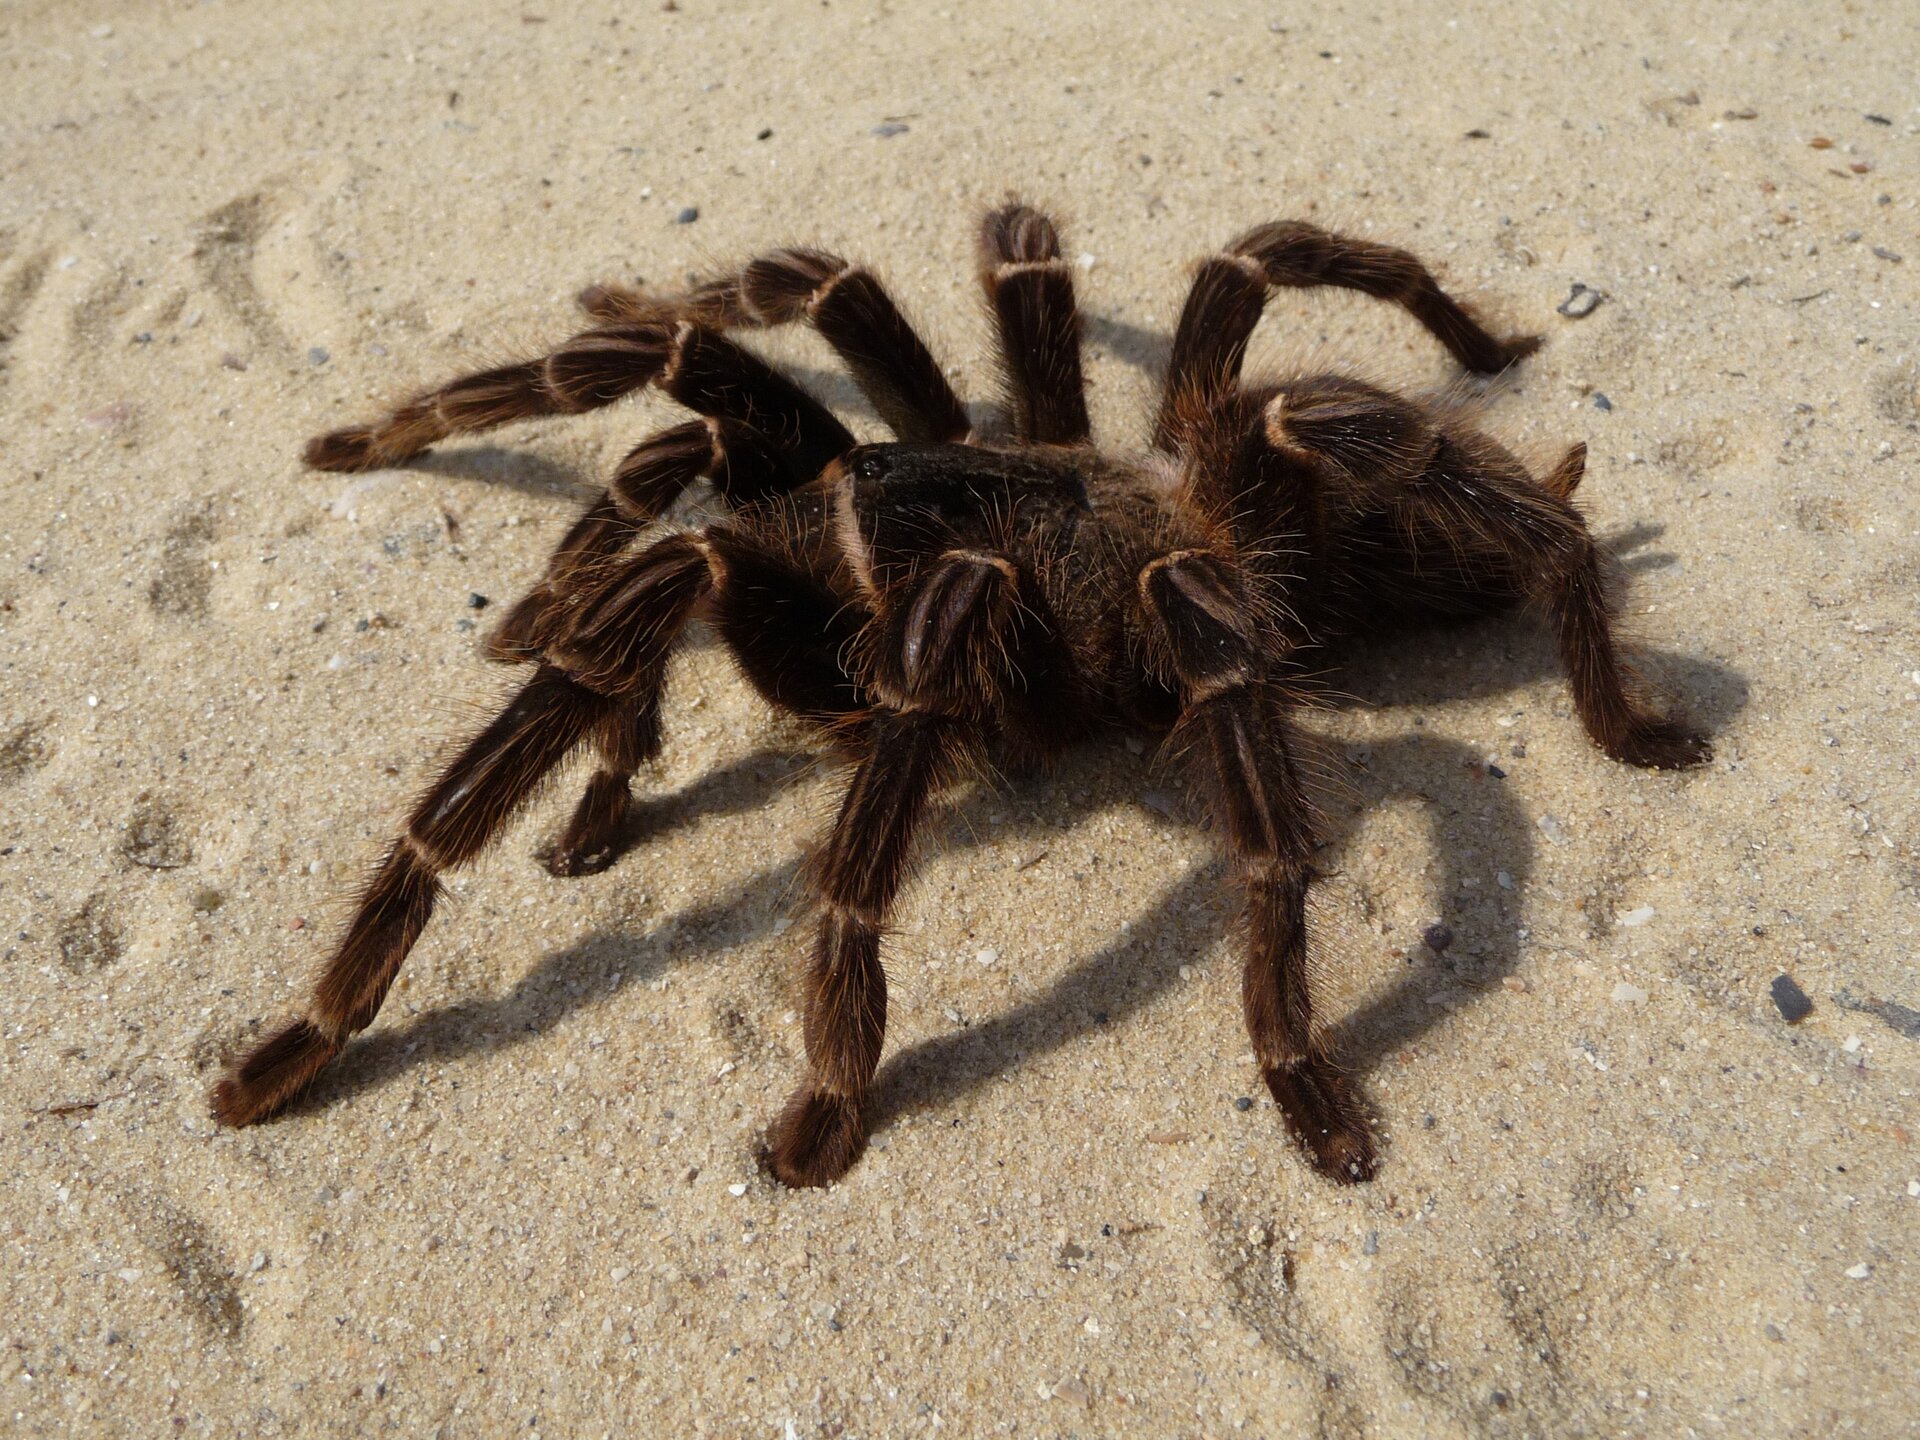 Fotografia przedstawia pająka ptasznika. Pająk ma owalne ciało wsparte na ośmiu odnóżach. Ciało jest brązowe, pokryte włoskami. Pająk stoi na piasku.